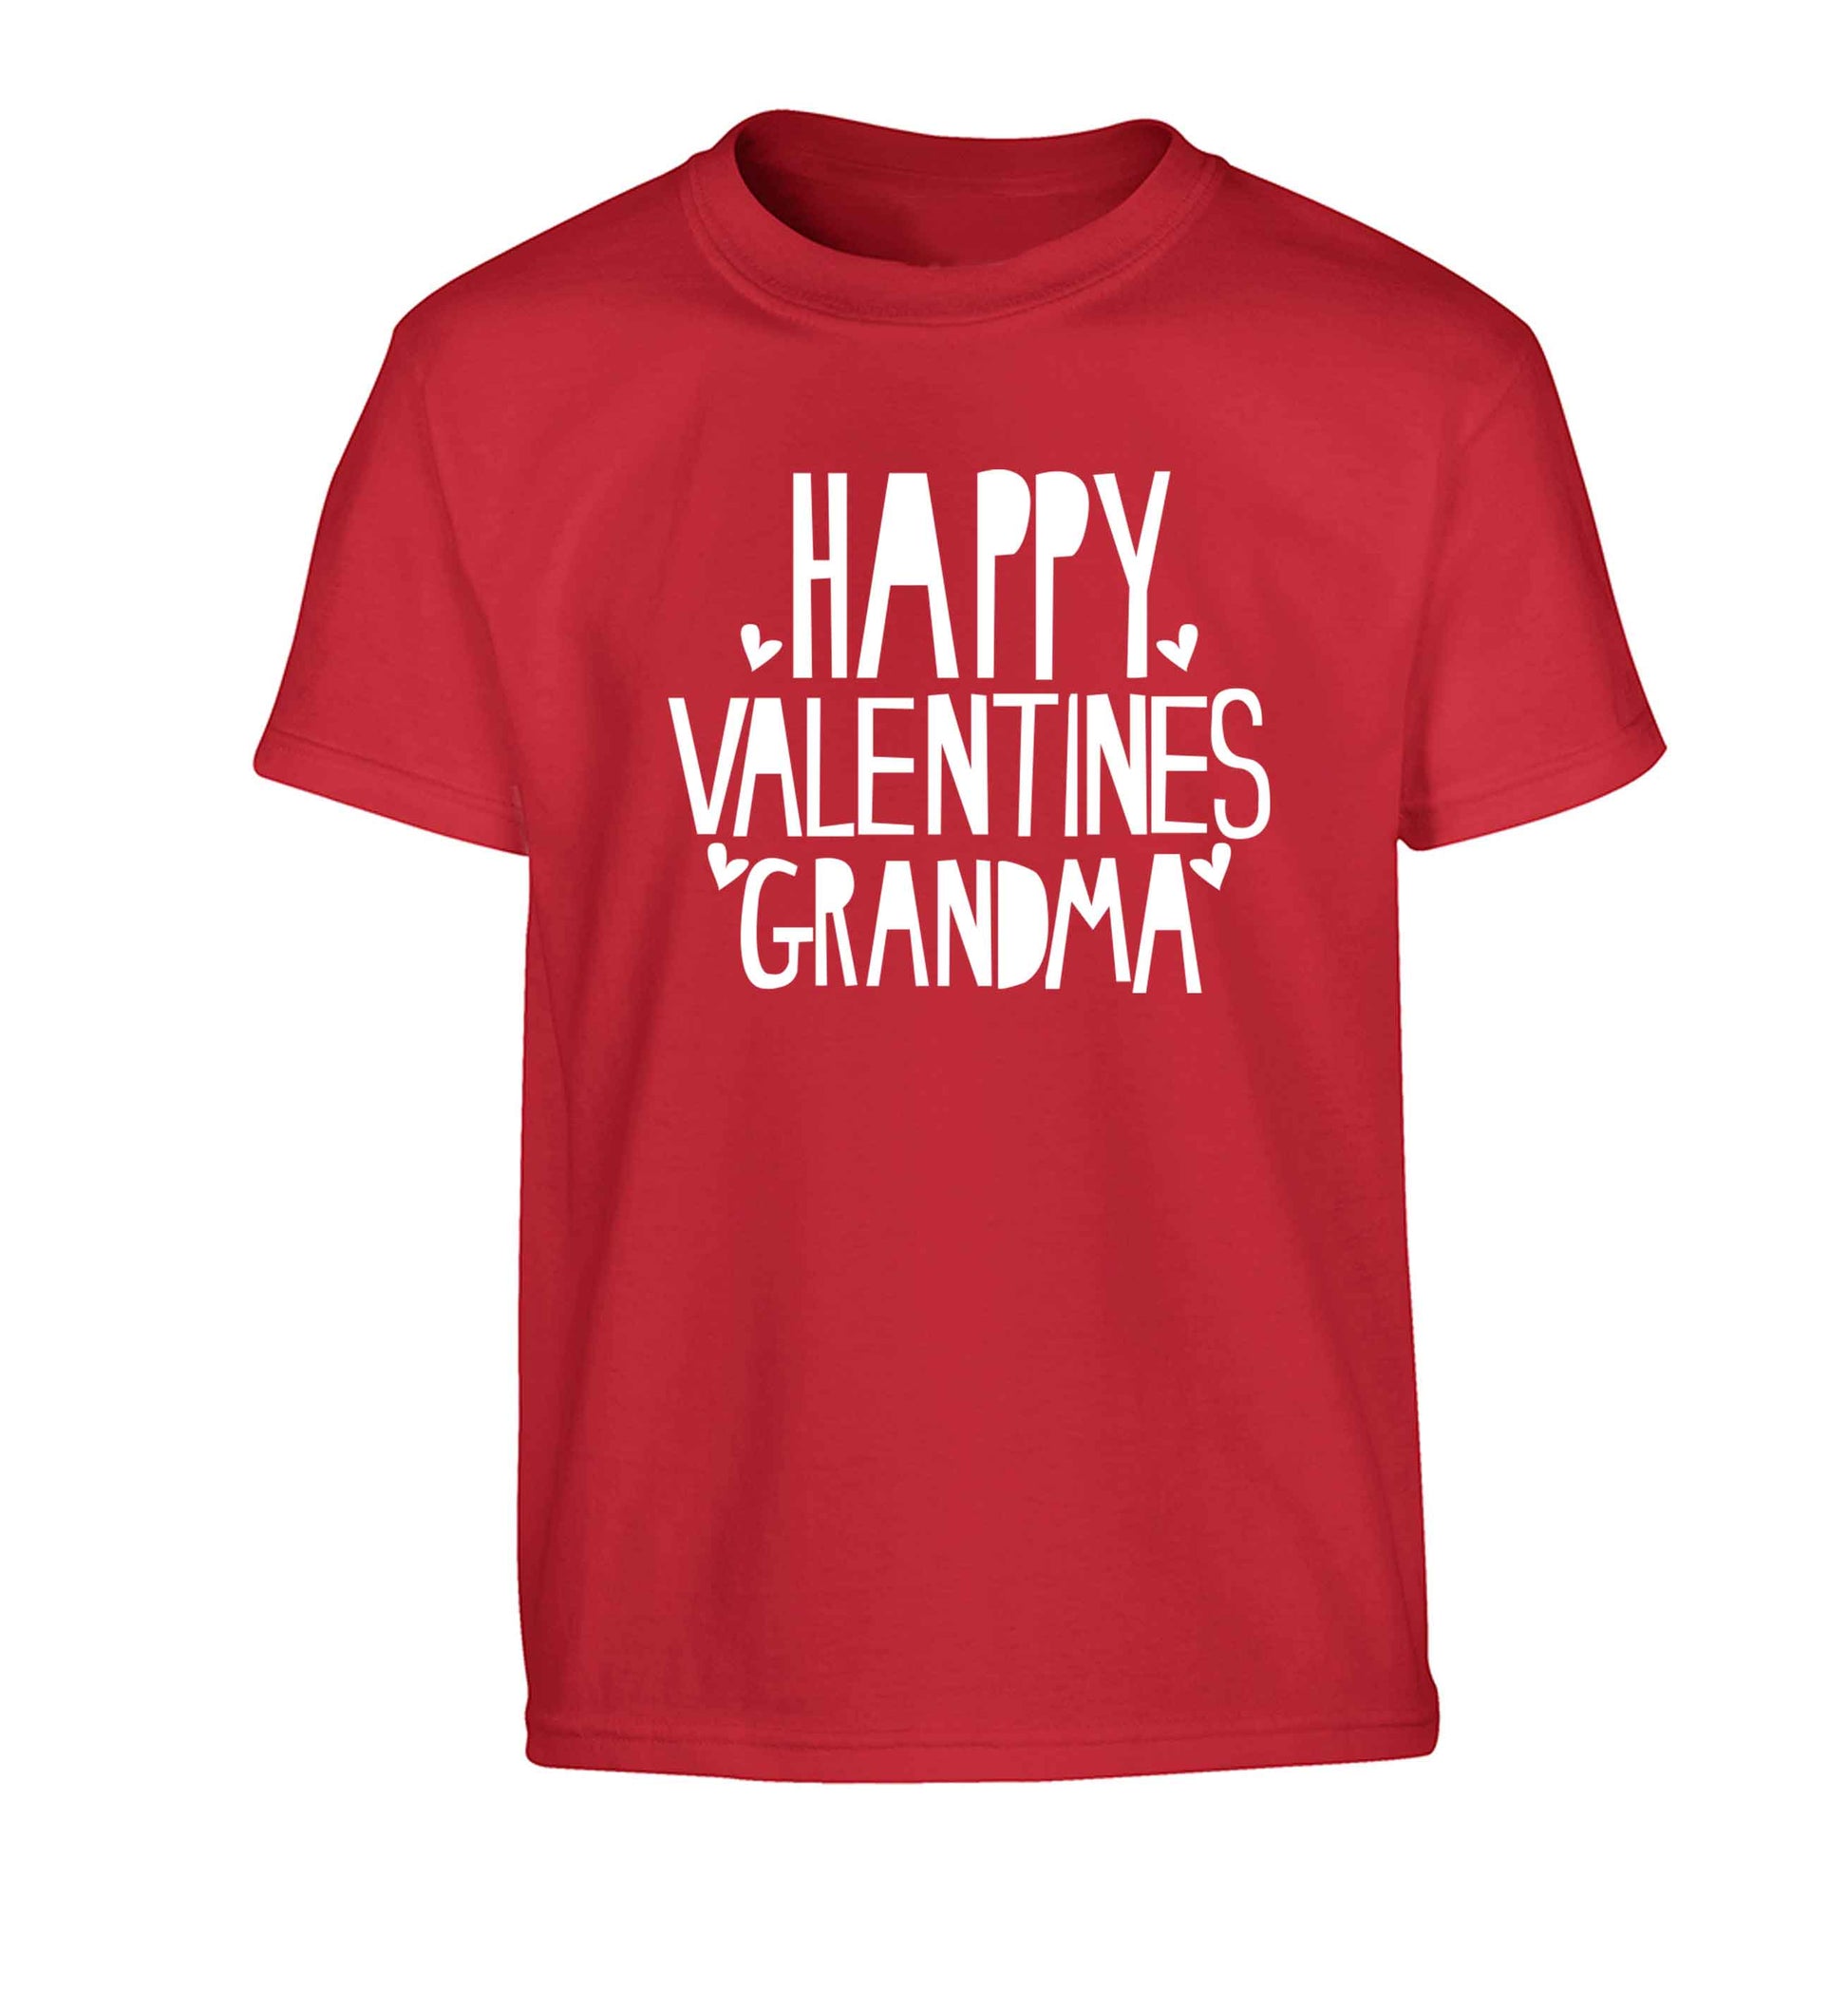 Happy valentines grandma Children's red Tshirt 12-13 Years